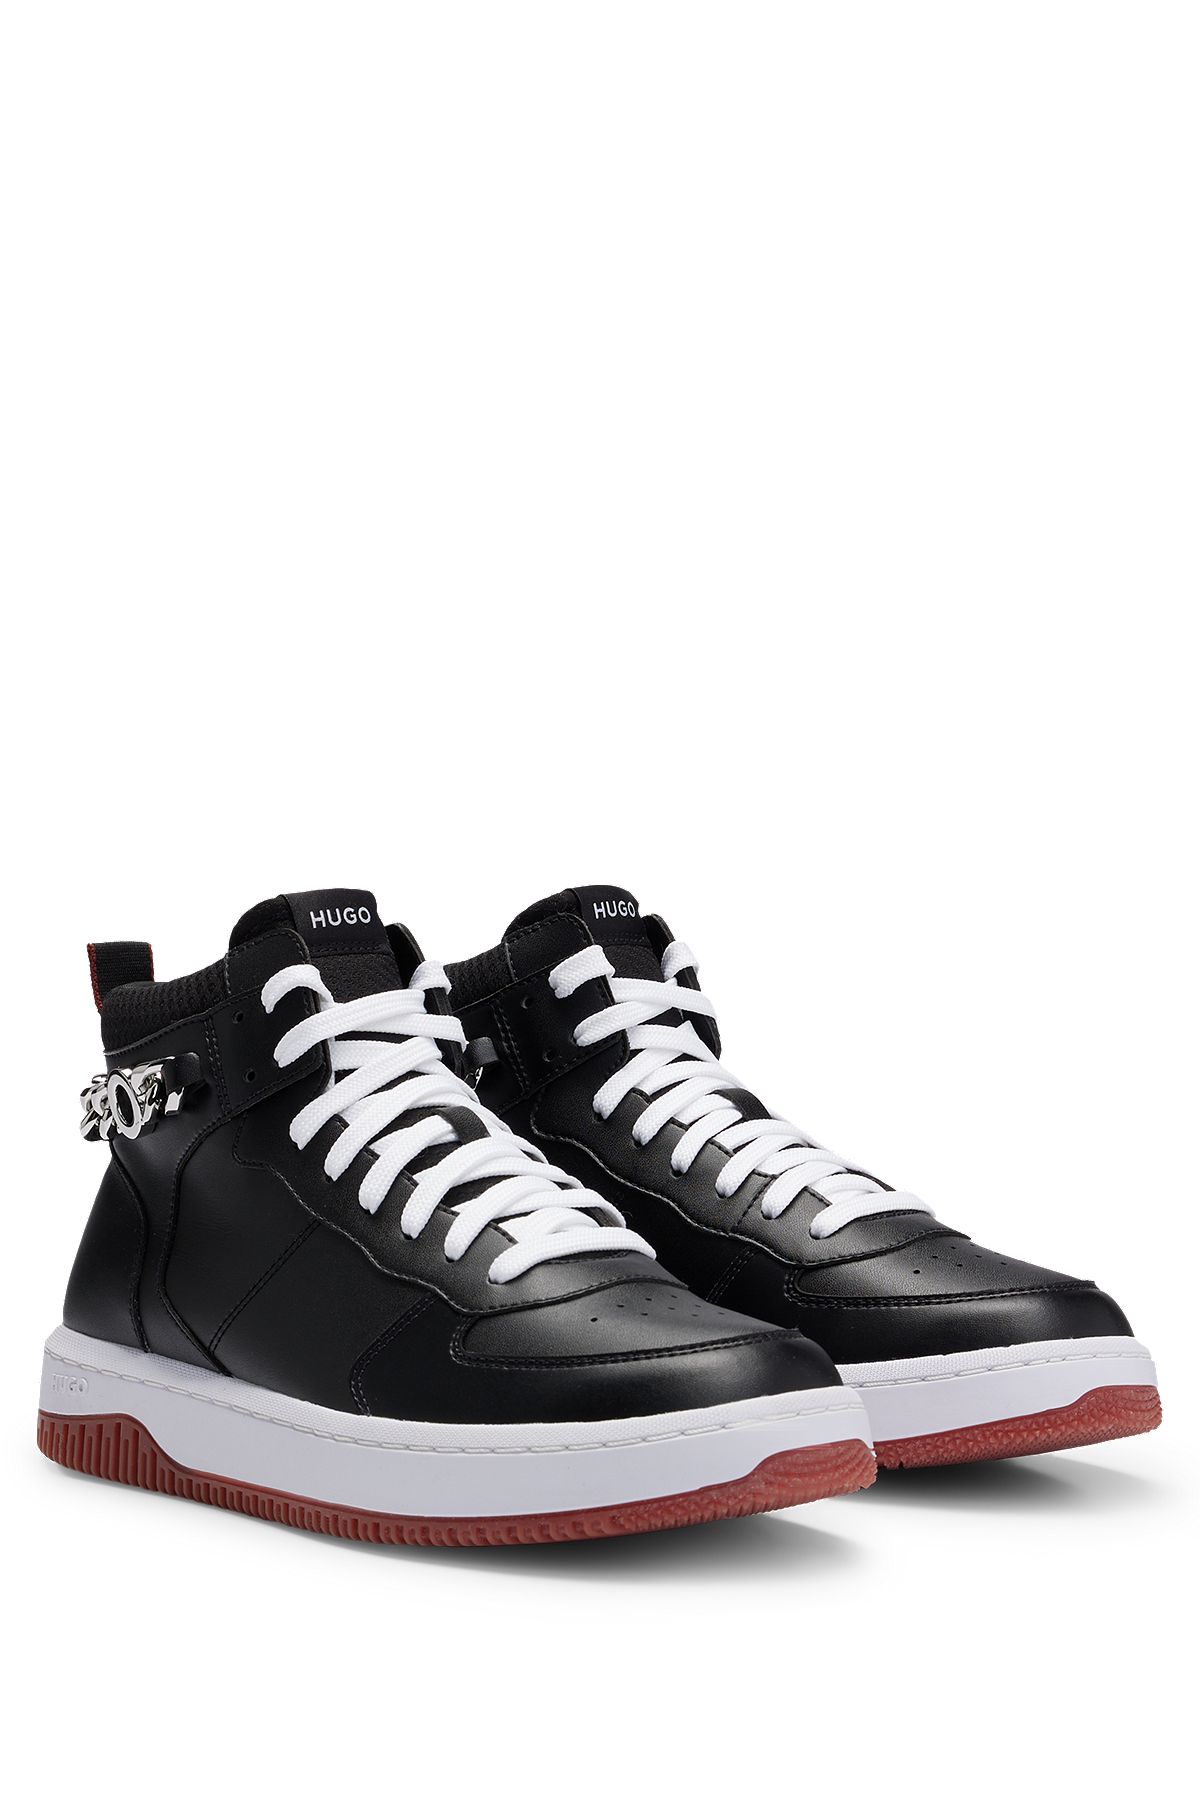 Sneakers high-top con catena brandizzata, Nero